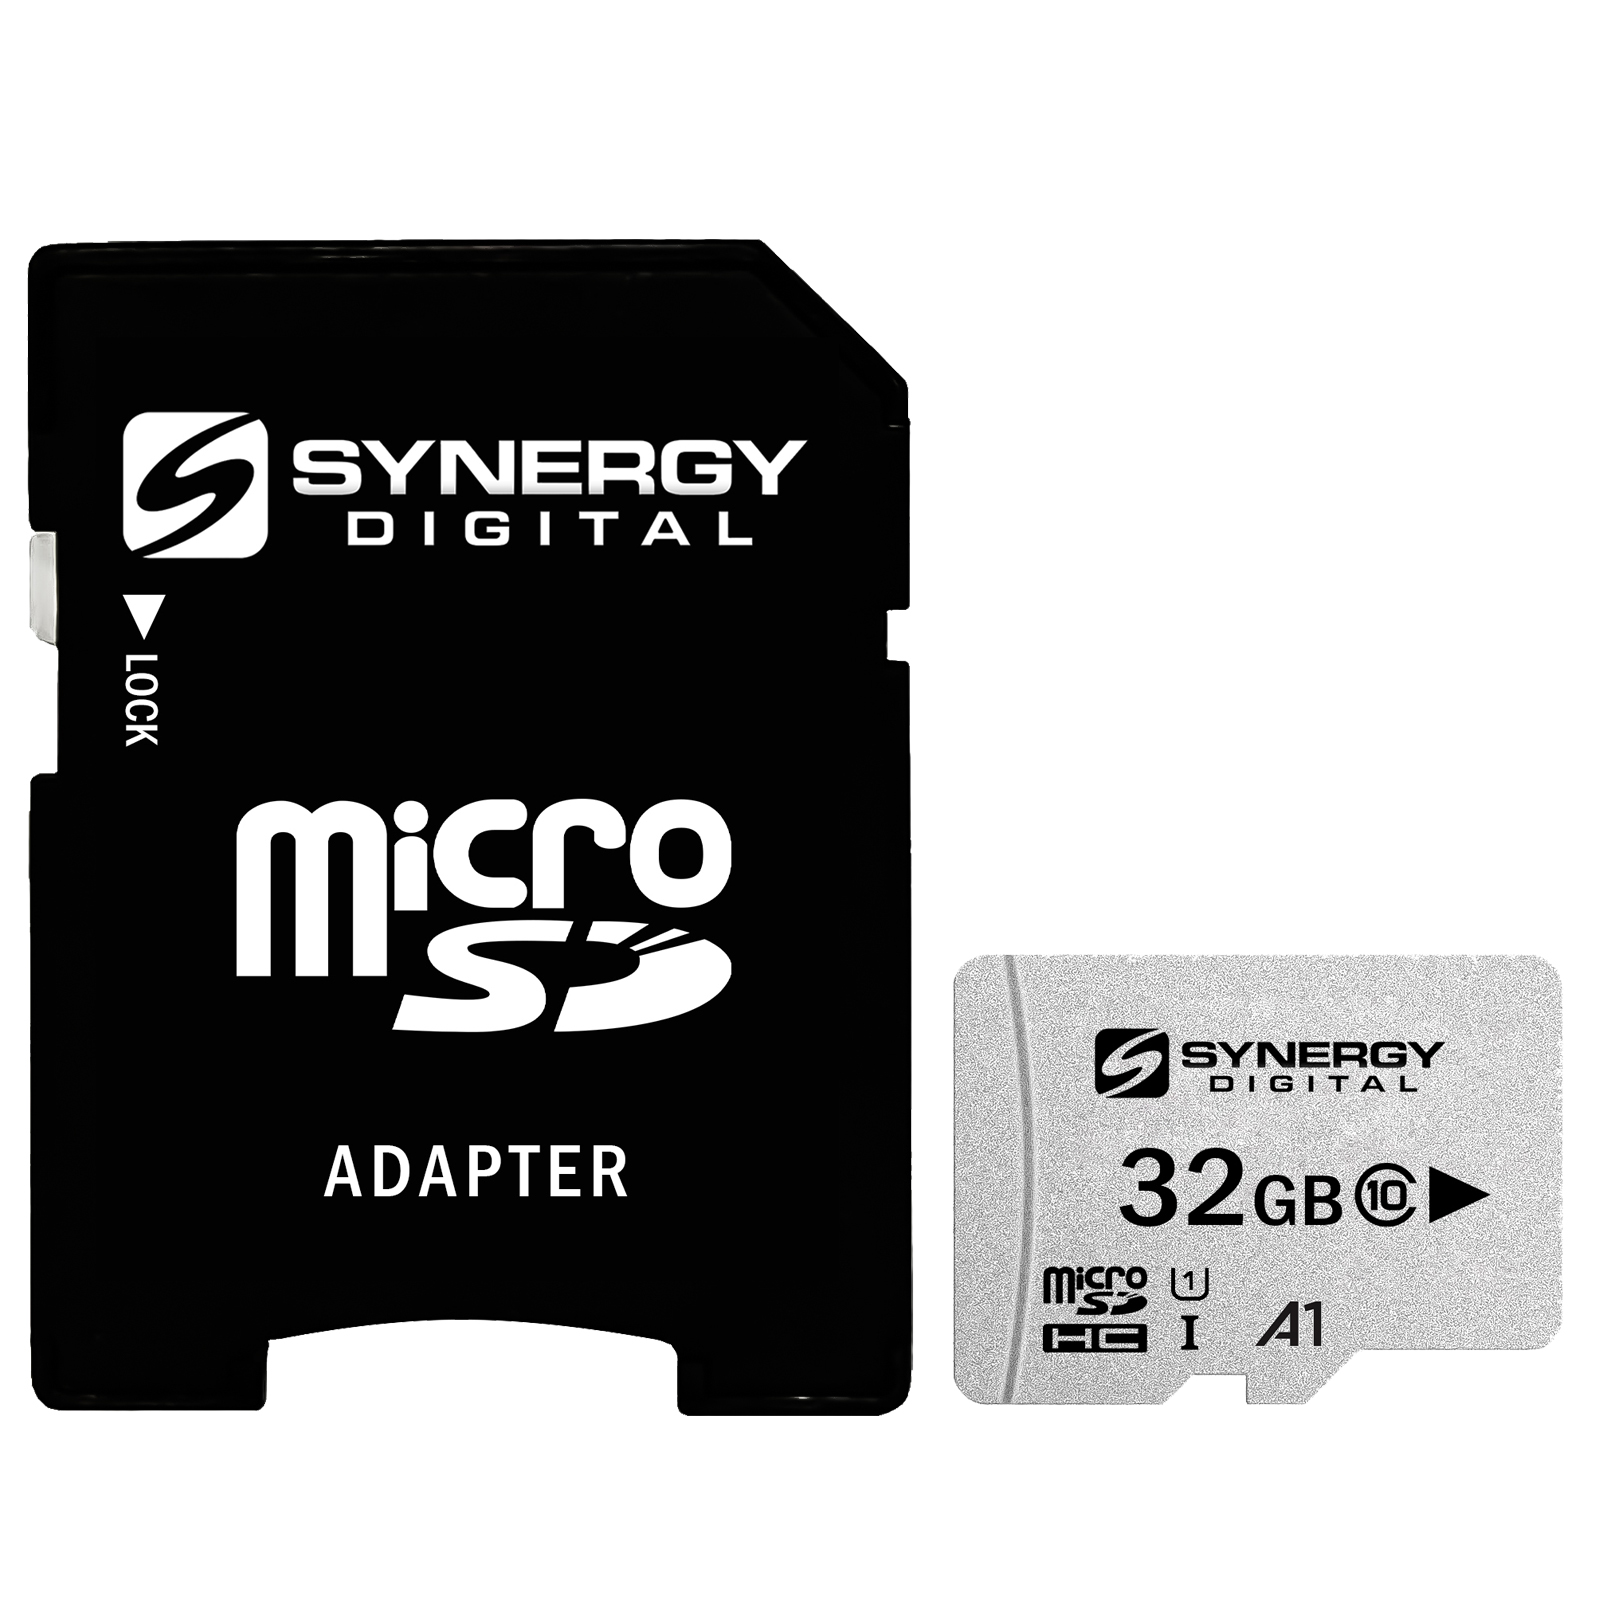 Memory Cards for Veho VCC-006-K2 Digital Camera